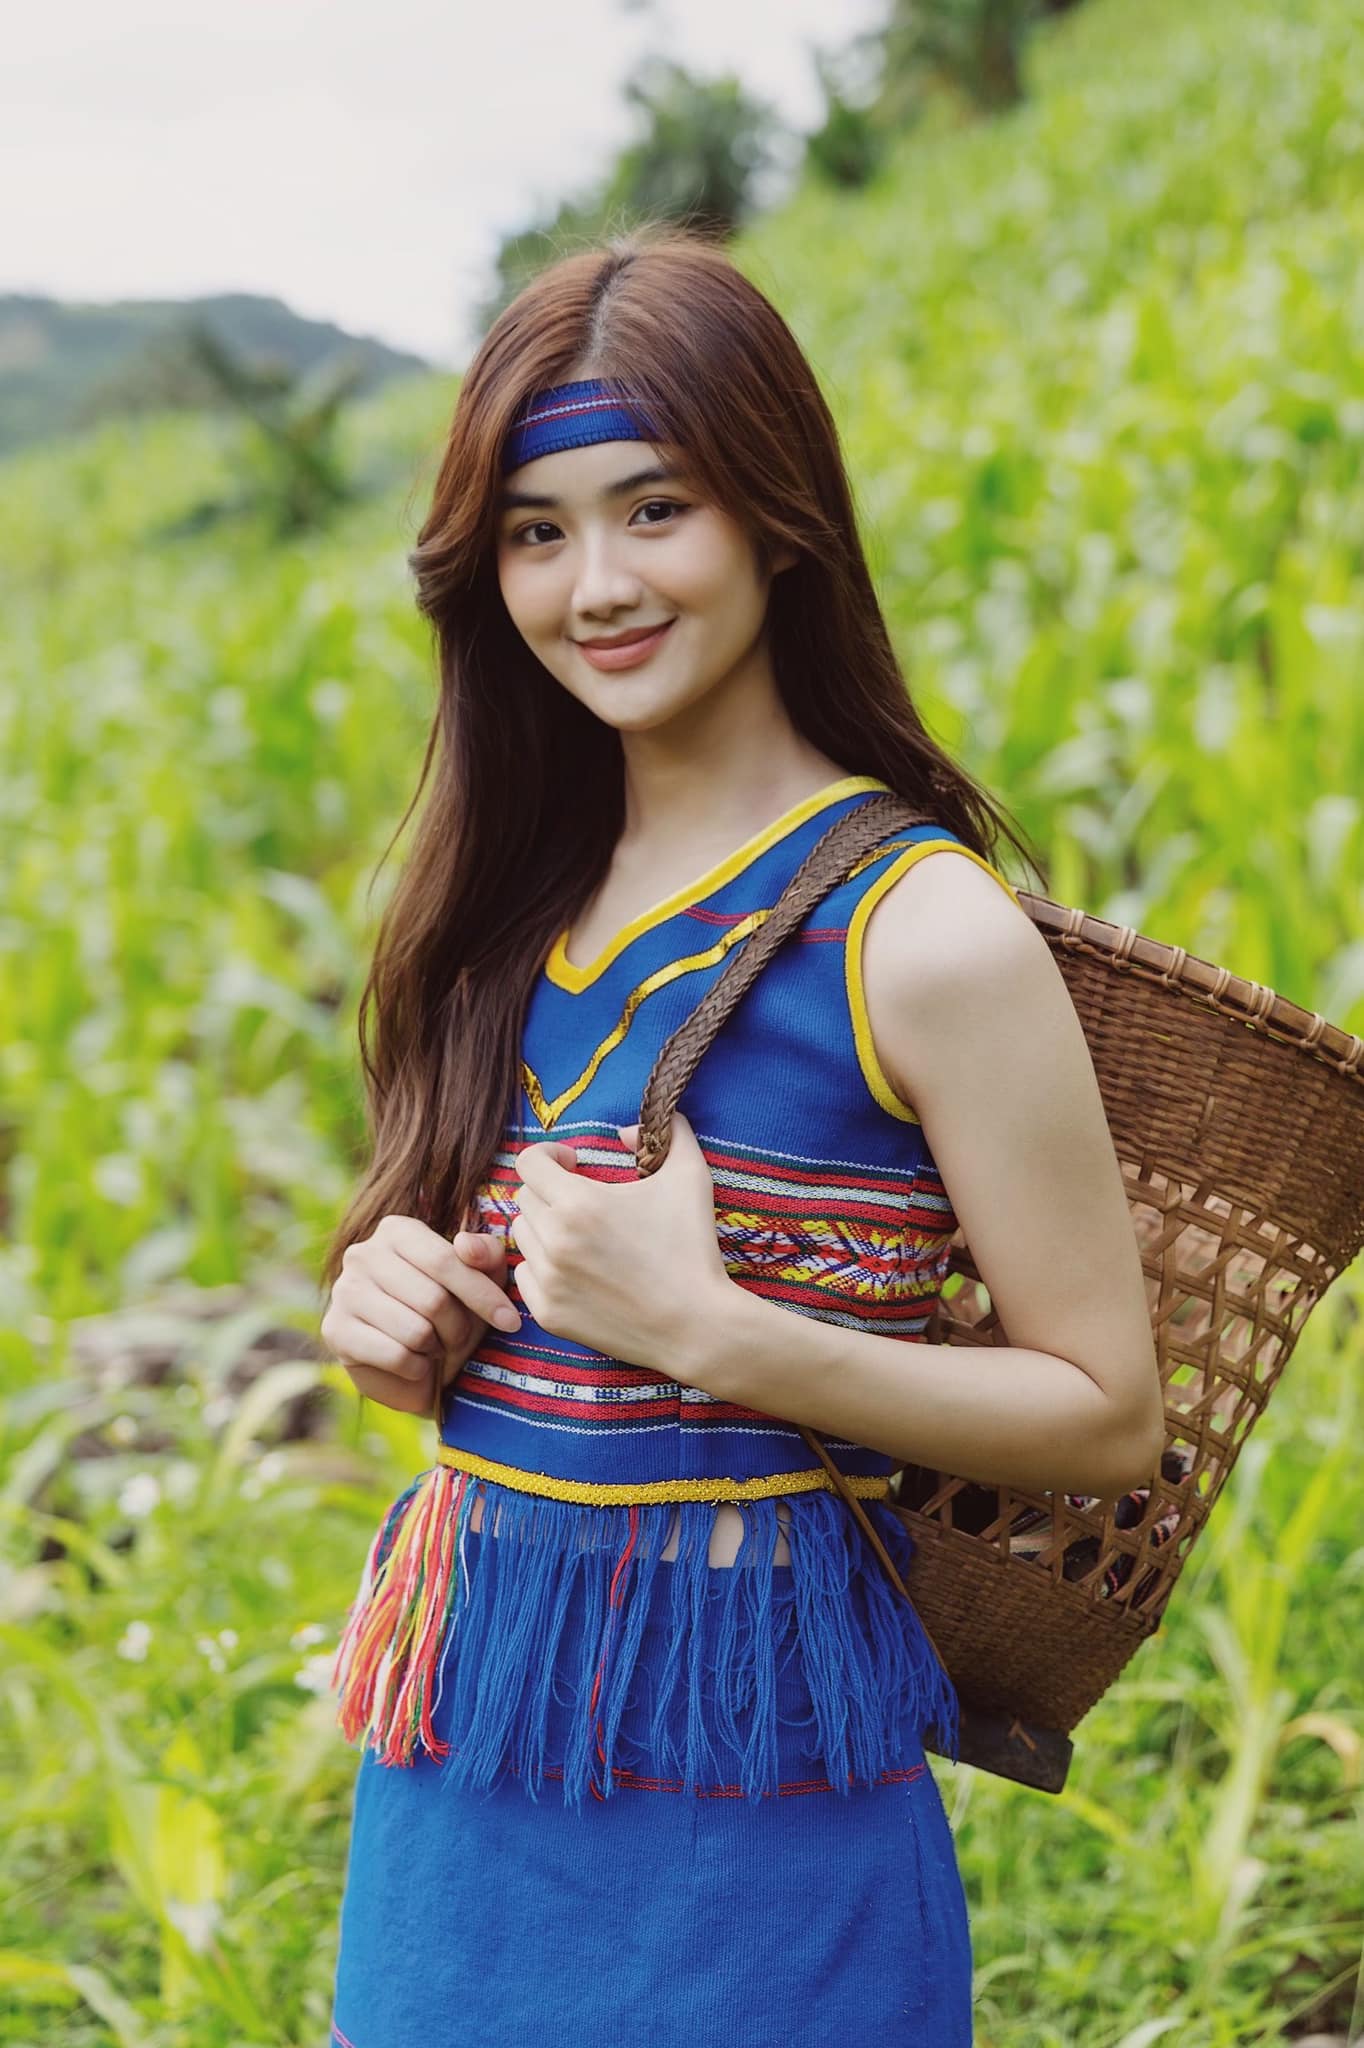 Trong một lần về quê nhà Đắk Nông để quảng bá du lịch, Minh Anh bất ngờ nhận nhiều lời khen khi mặc trang phục dân tộc